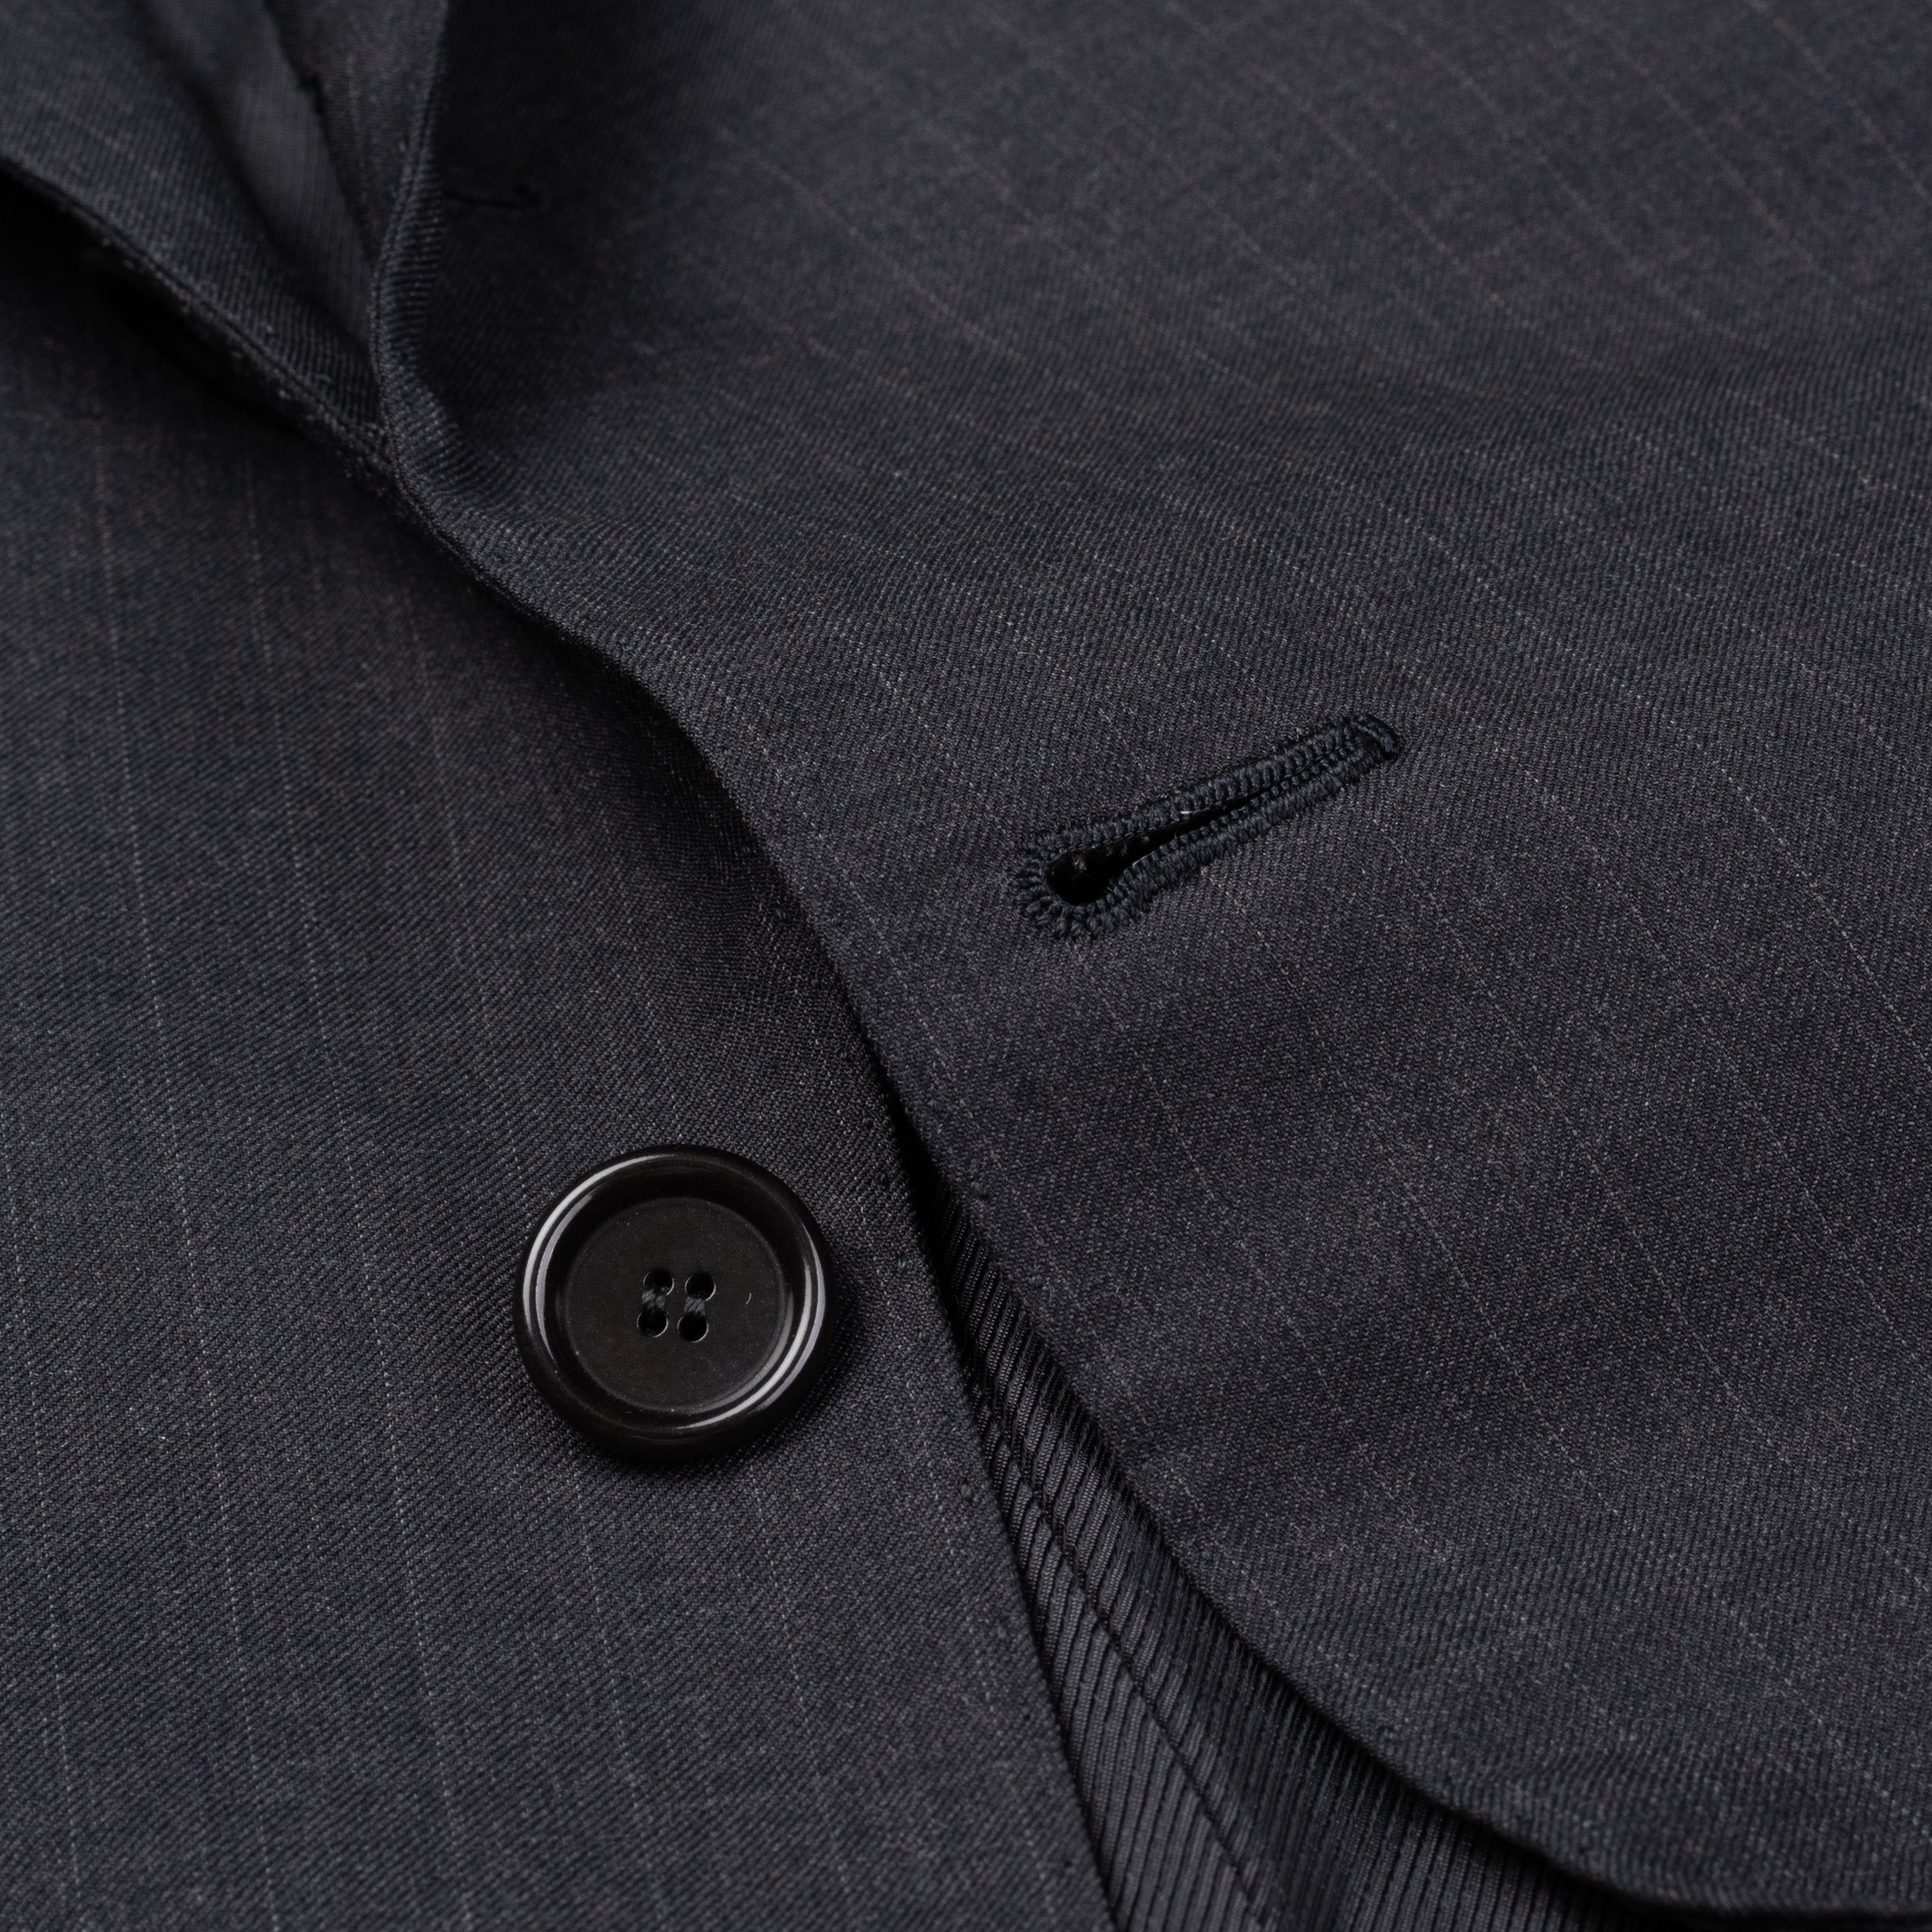 CESARE ATTOLINI for M. BARDELLI Gray Striped Wool Super 180's Jacket 50 NEW 40 CESARE ATTOLINI